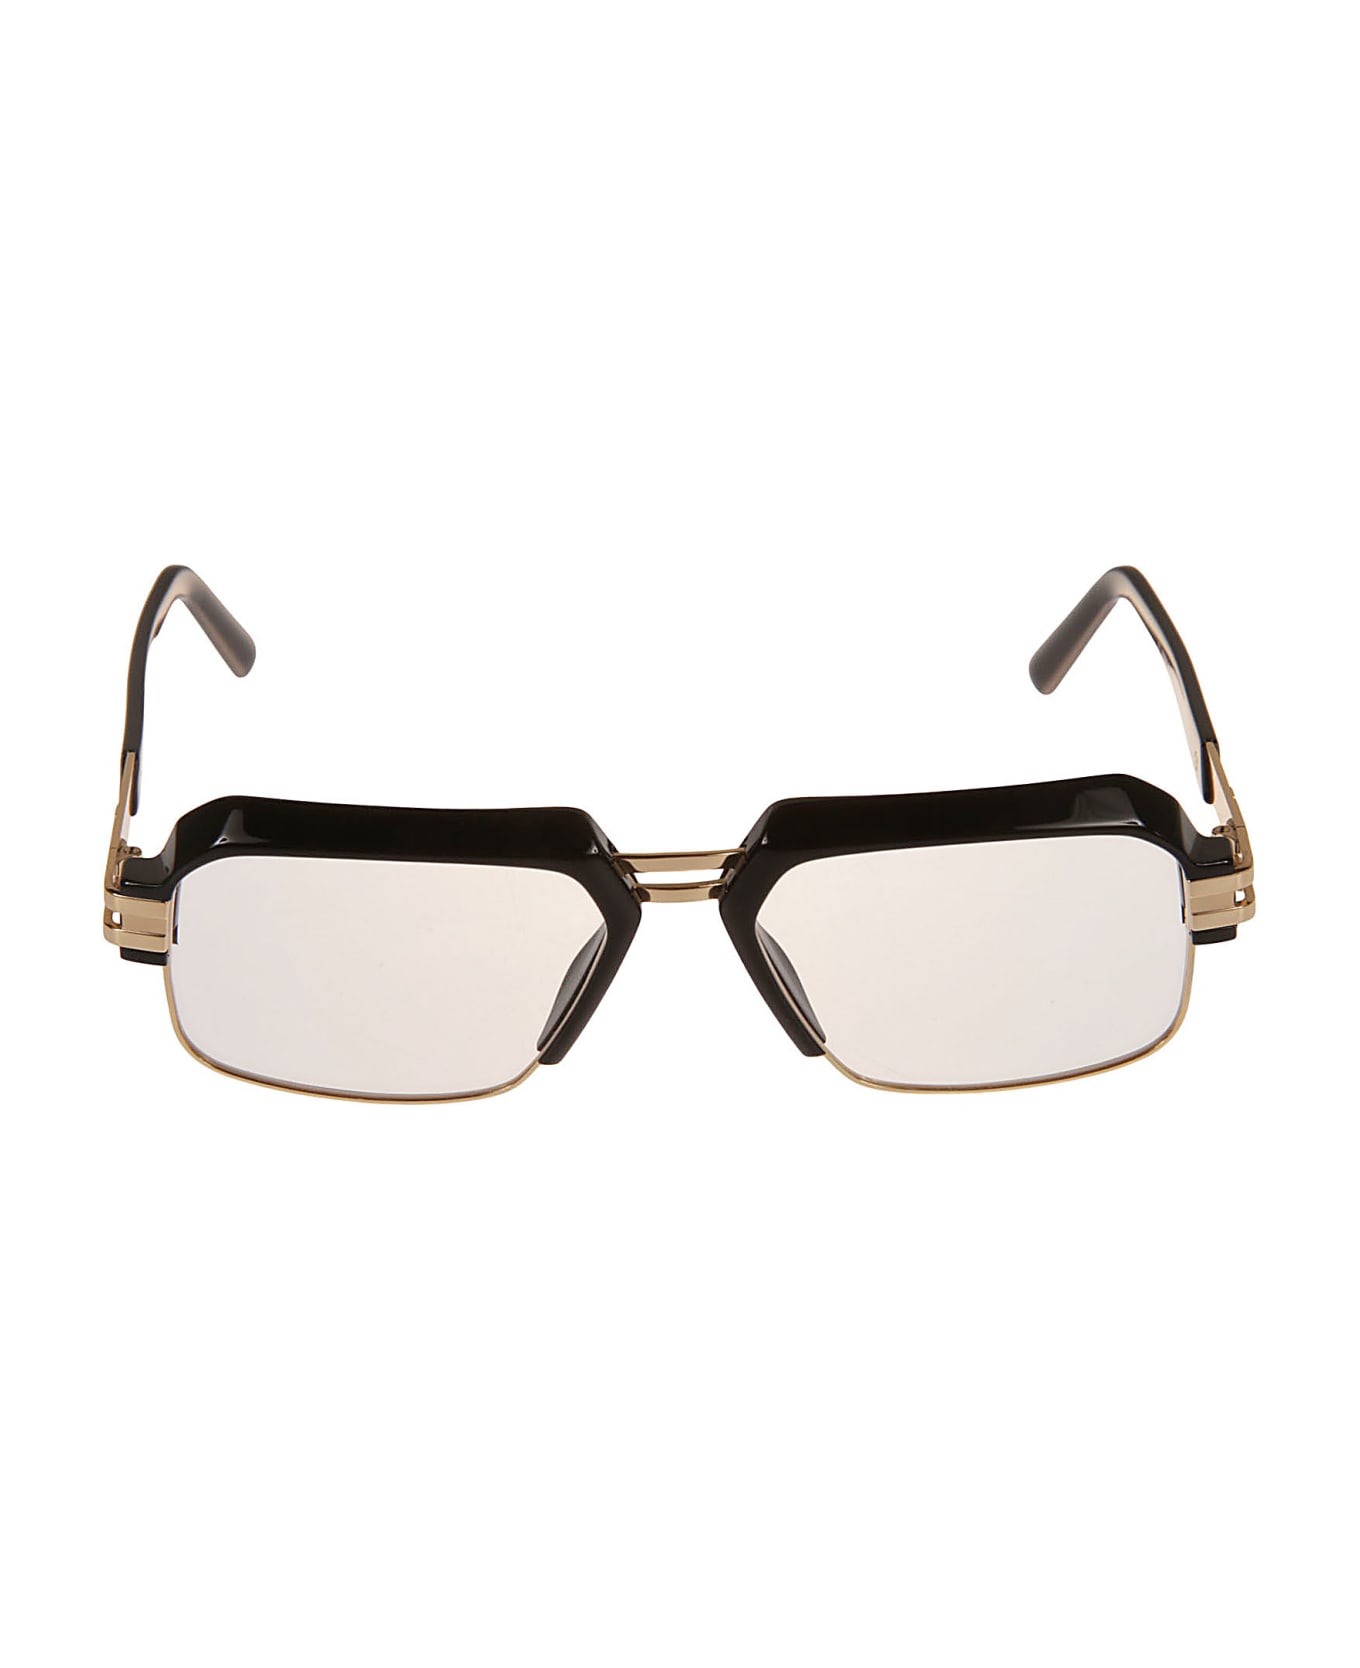 Cazal Clubmaster Classic Glasses - Nero